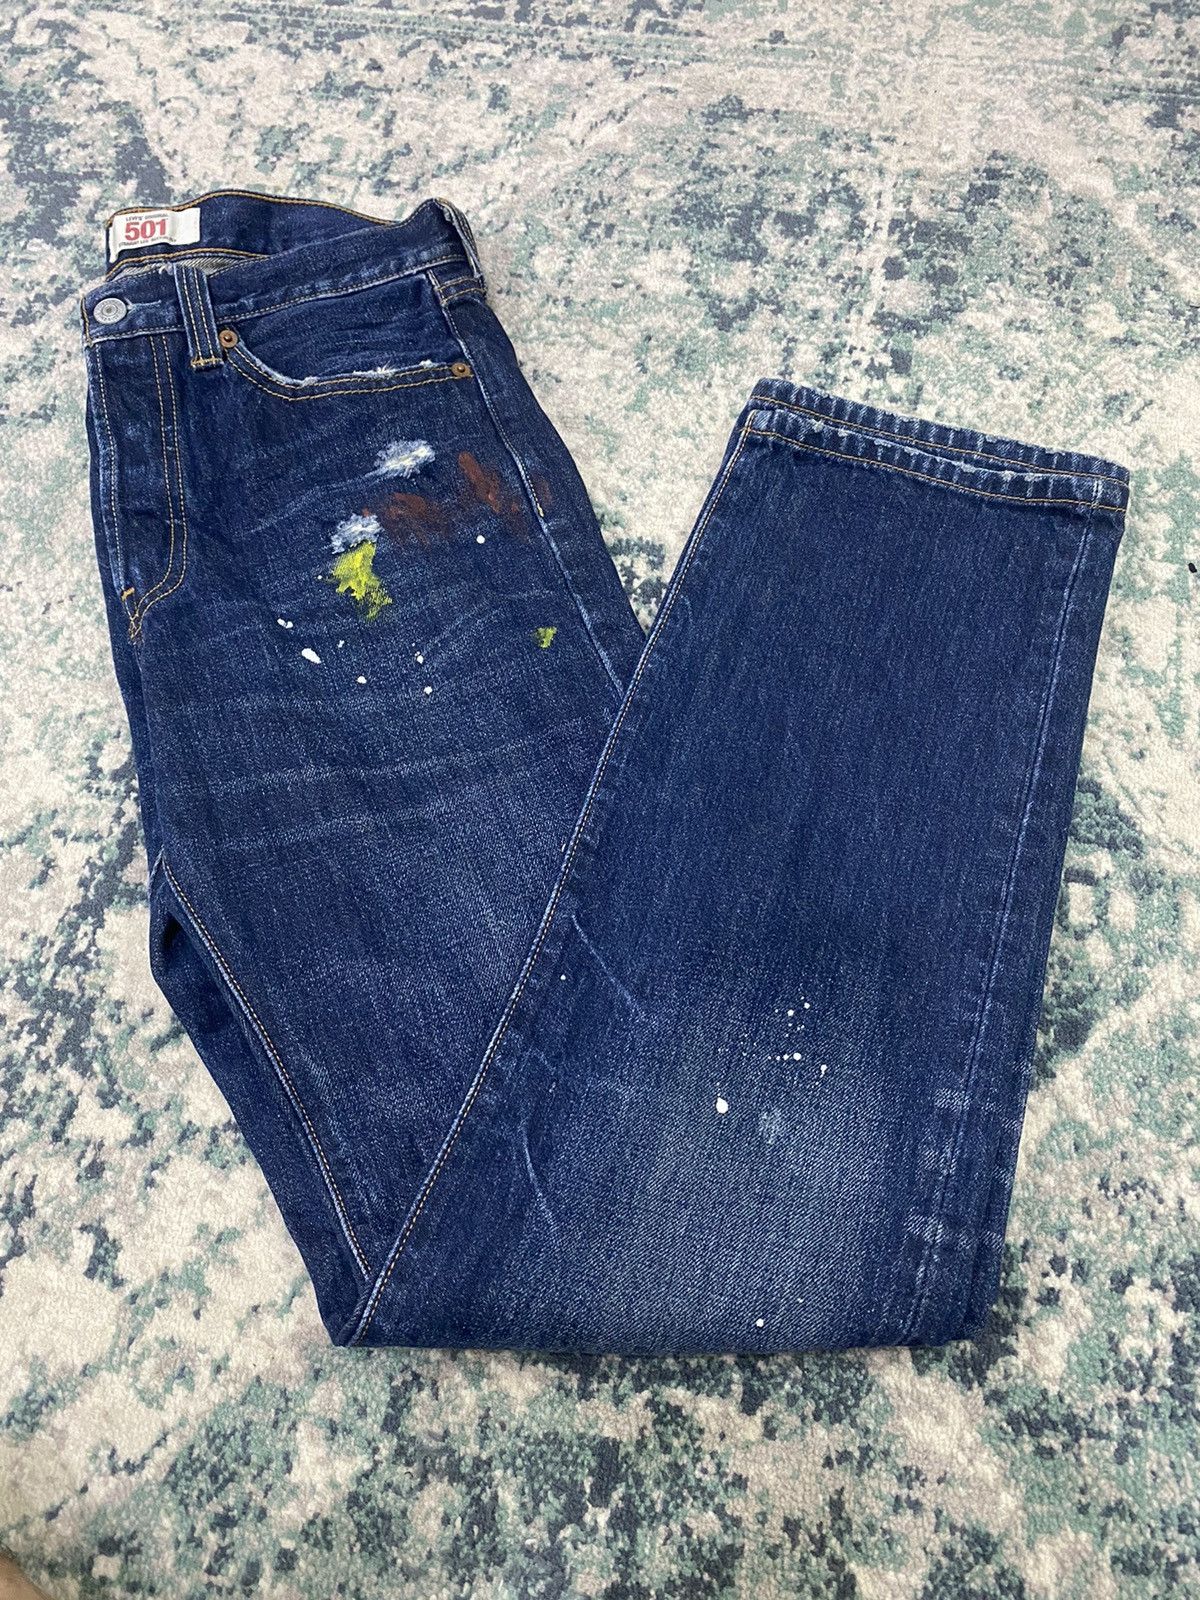 Levi’s Original Paint Splatter Limited Edition Jeans - 20